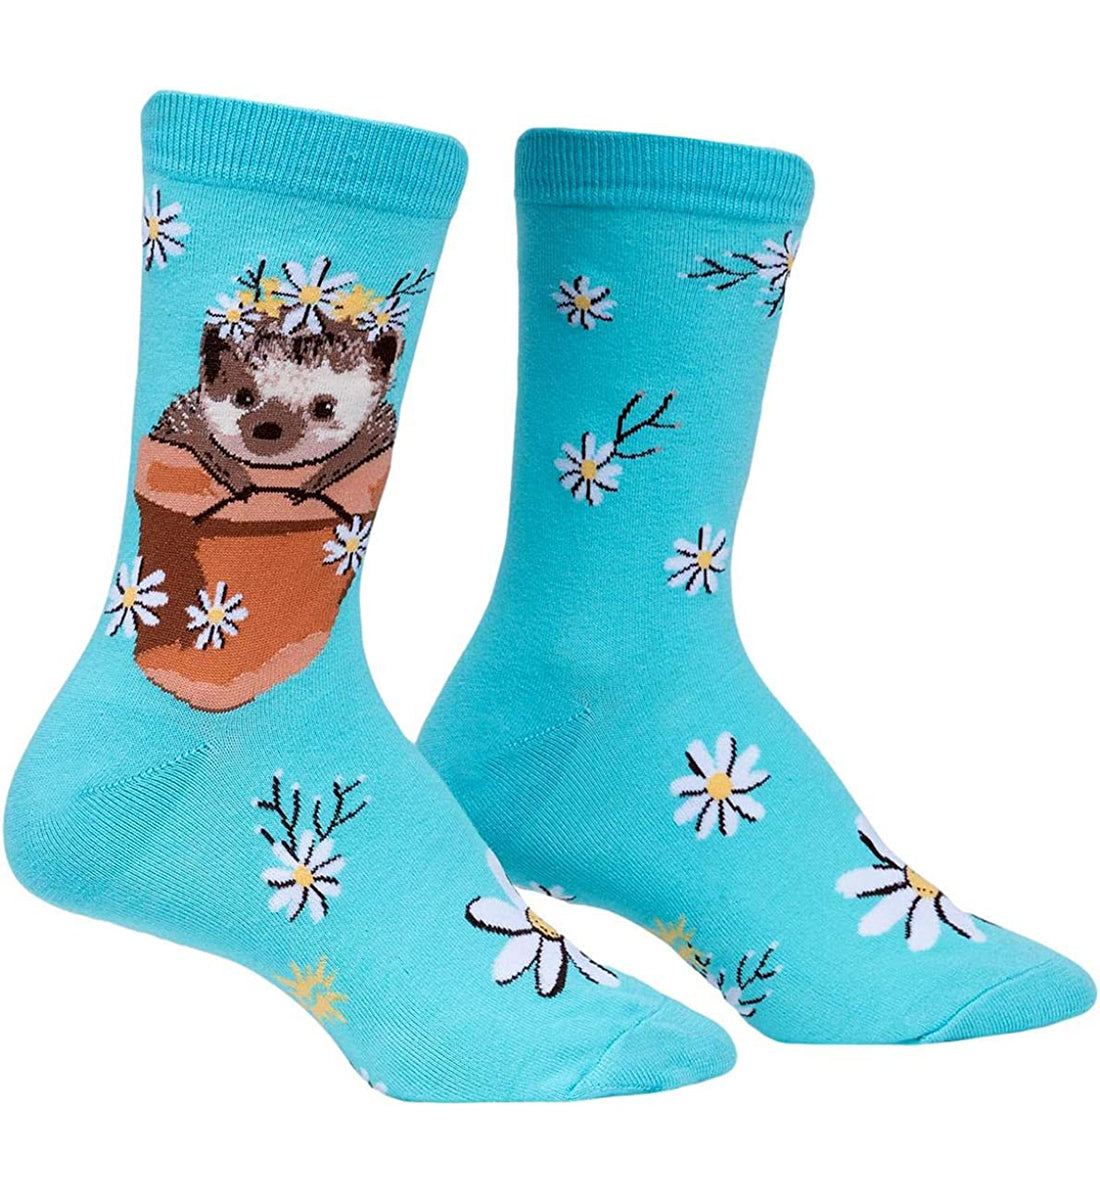 SOCK it to me Women's Crew Socks (w0356),My Dear Hedgehog - My Dear Hedgehog,One Size